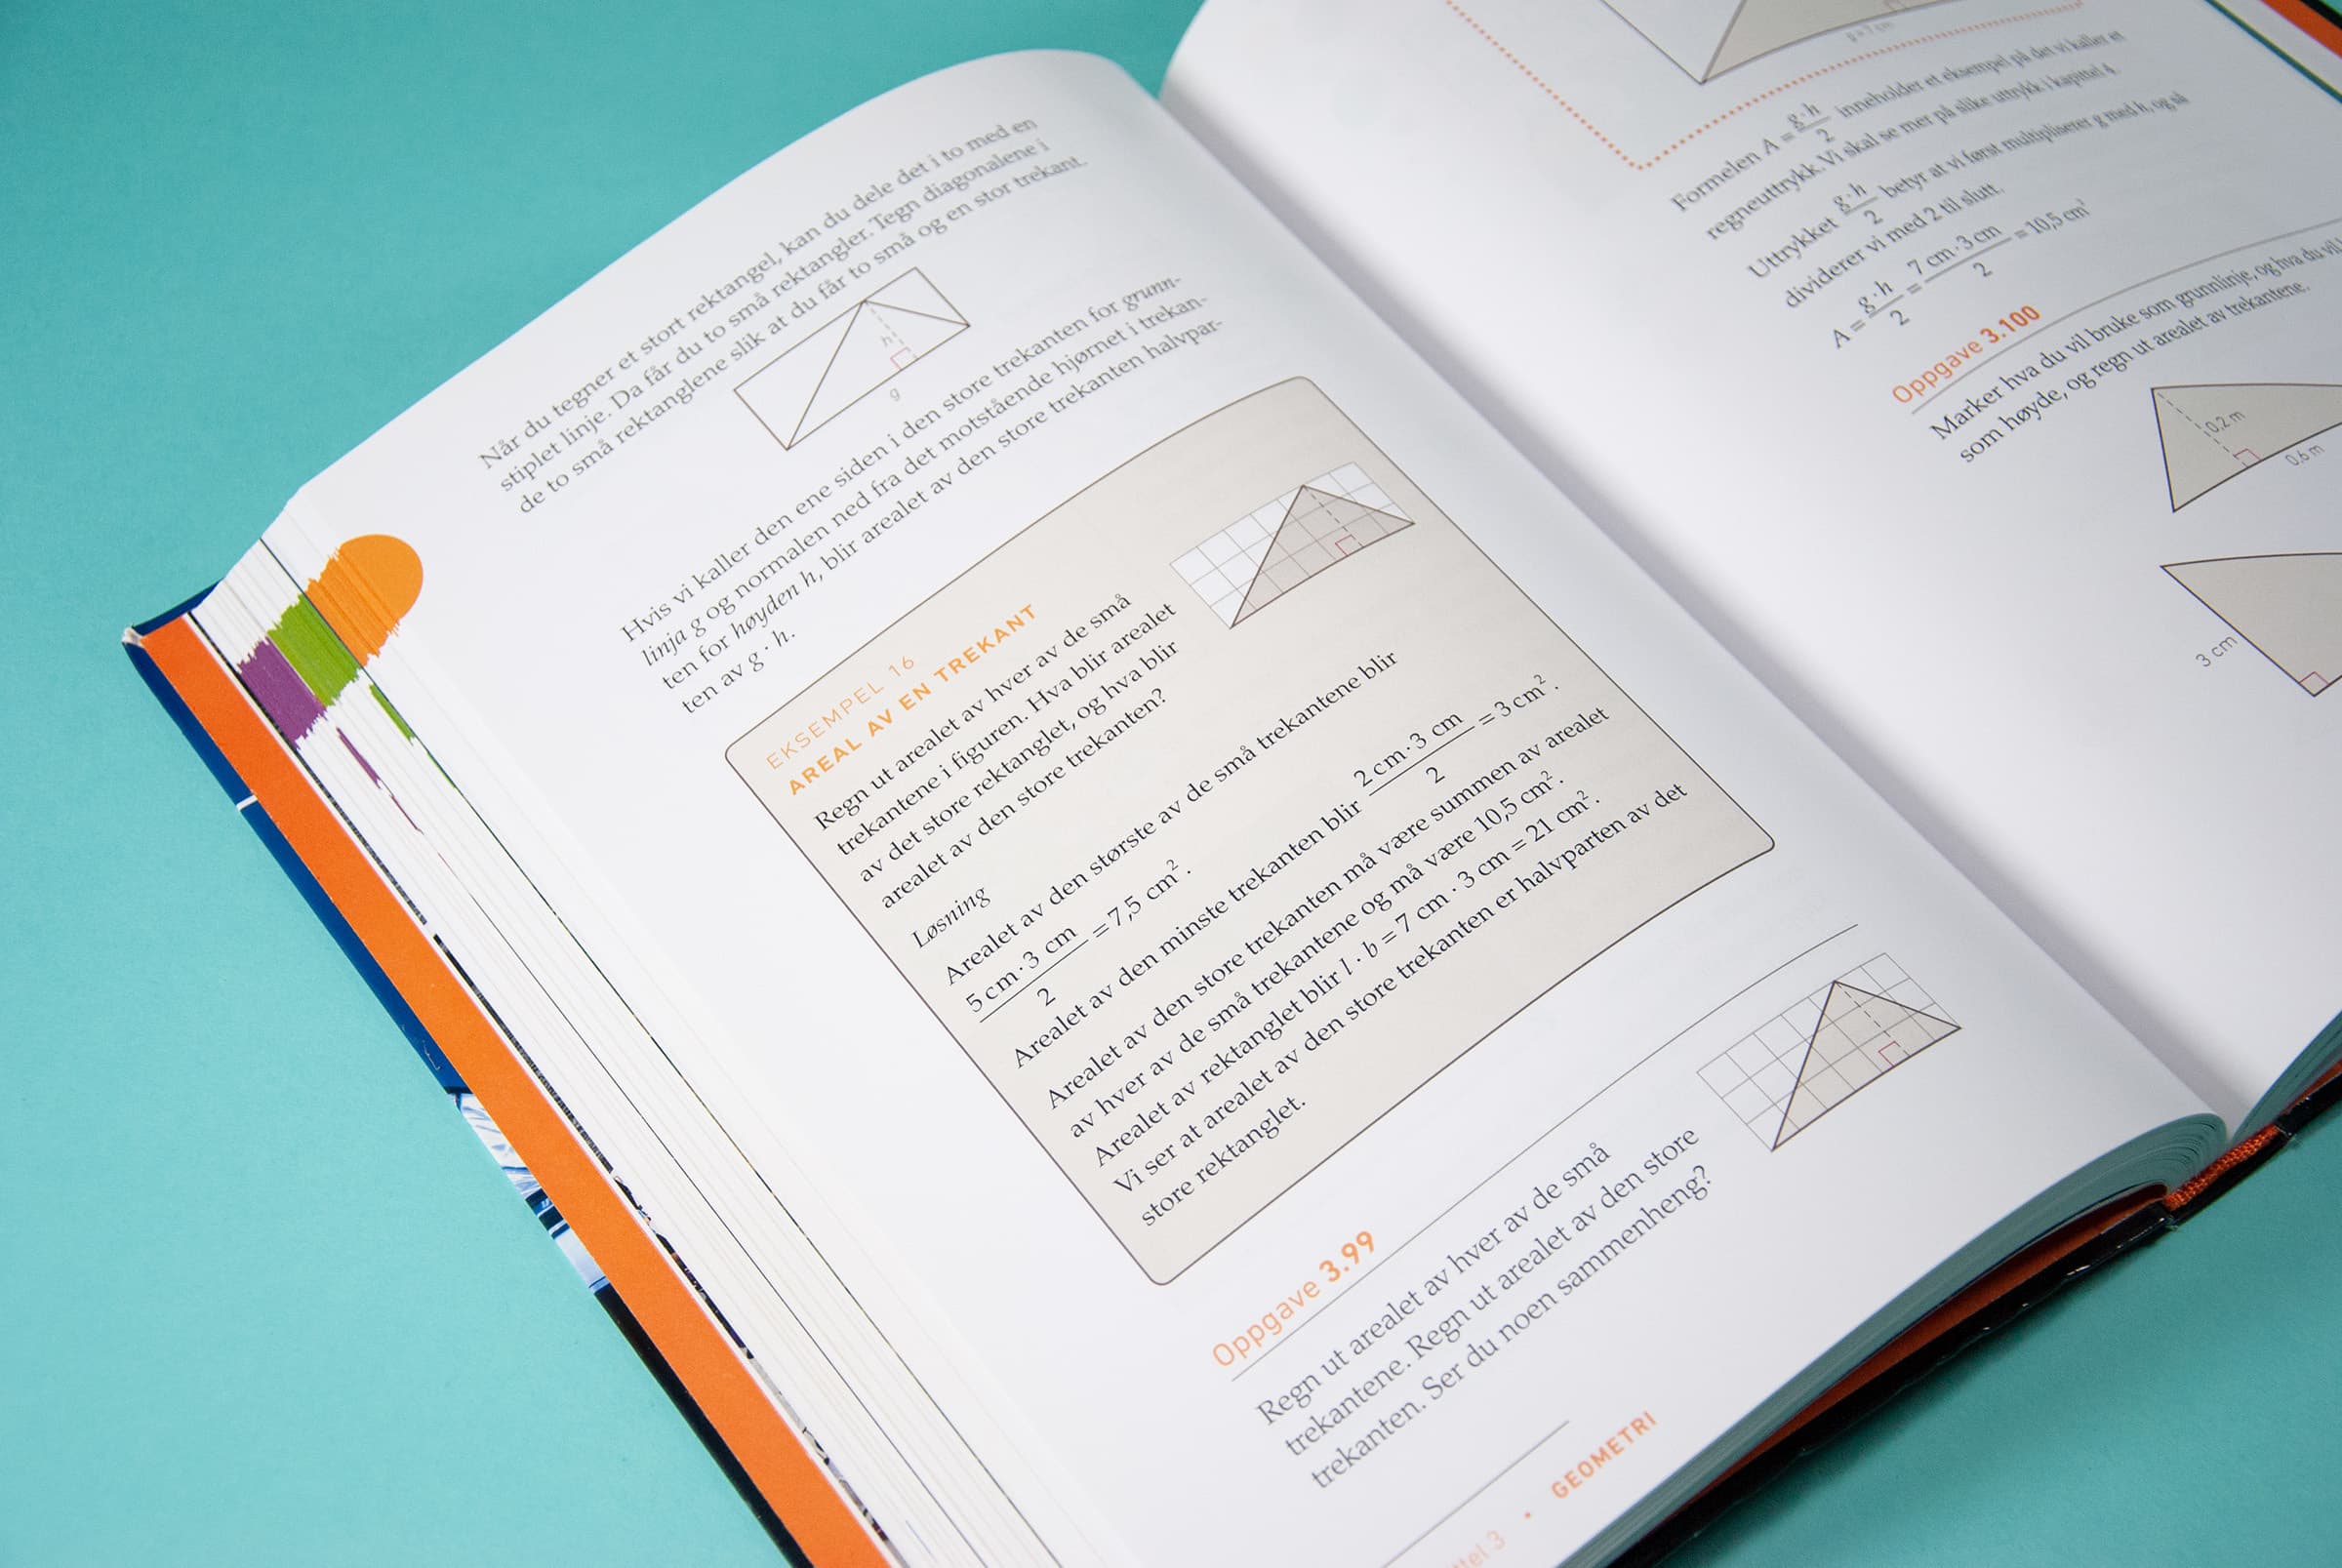 Bildet viser et oppslag av en bok. Det er tekst på siden, sammen med en del trekanter og grafer. Midt på venstre side er en eksempelboks.